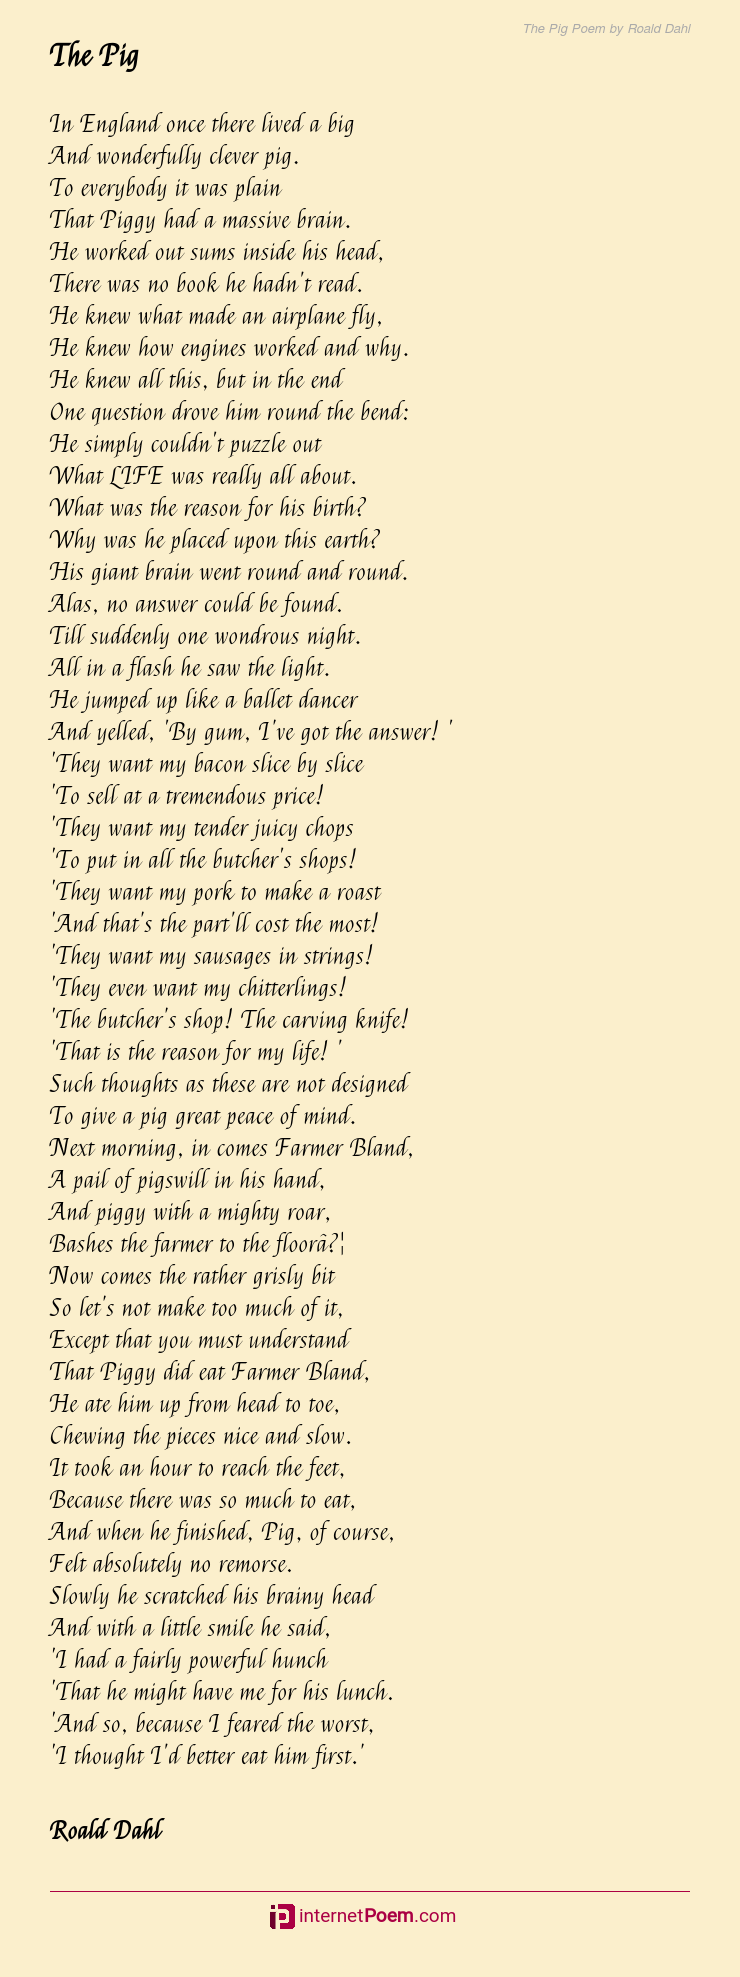 Roald Dahl Pig Poem